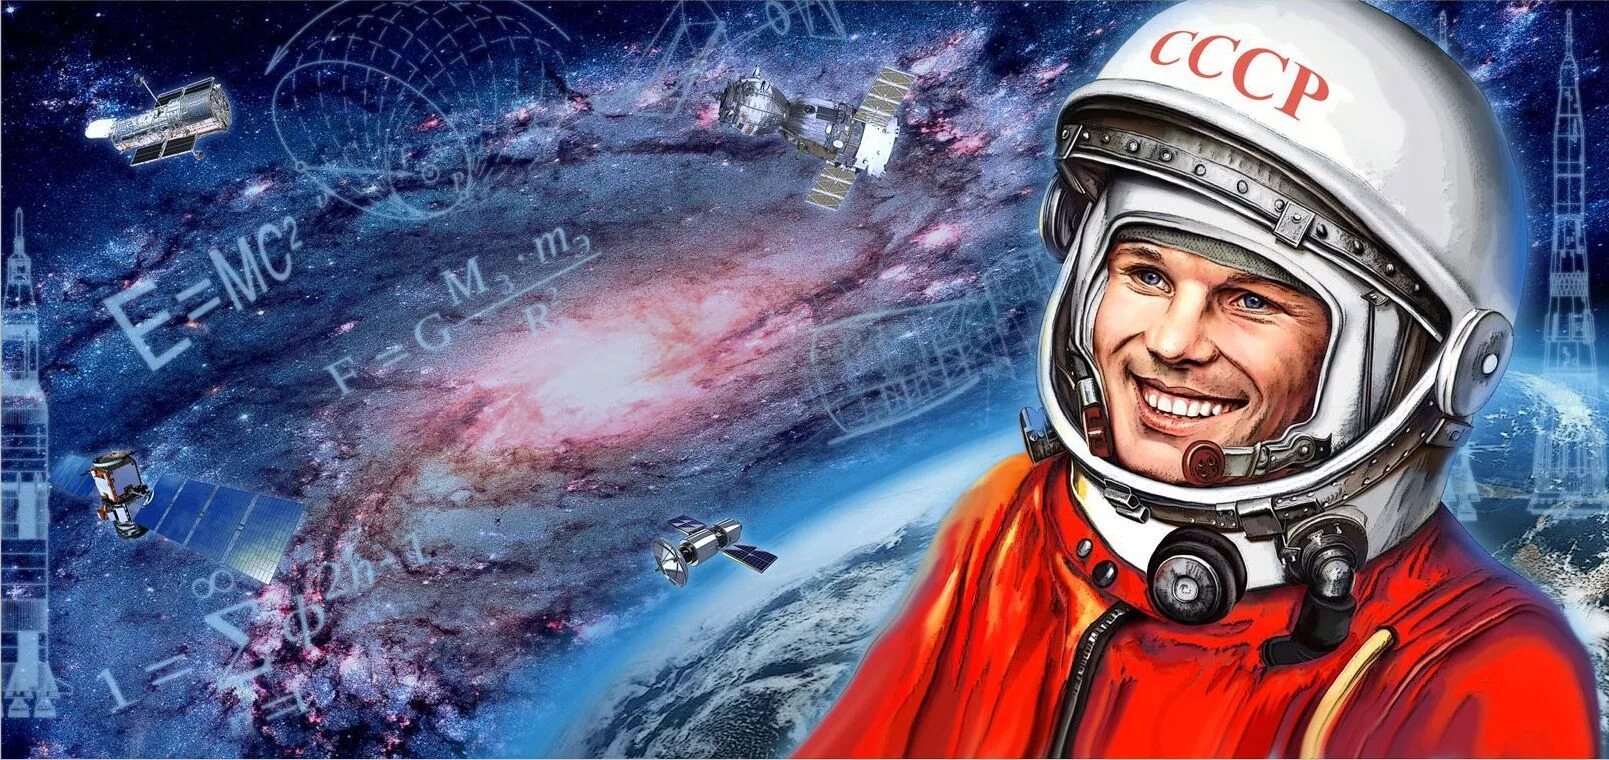 Посвященный первому полету человека в космос. Гагарин космонавт. 12 Апреля день космонавтики. День космонавтики Гагарин.